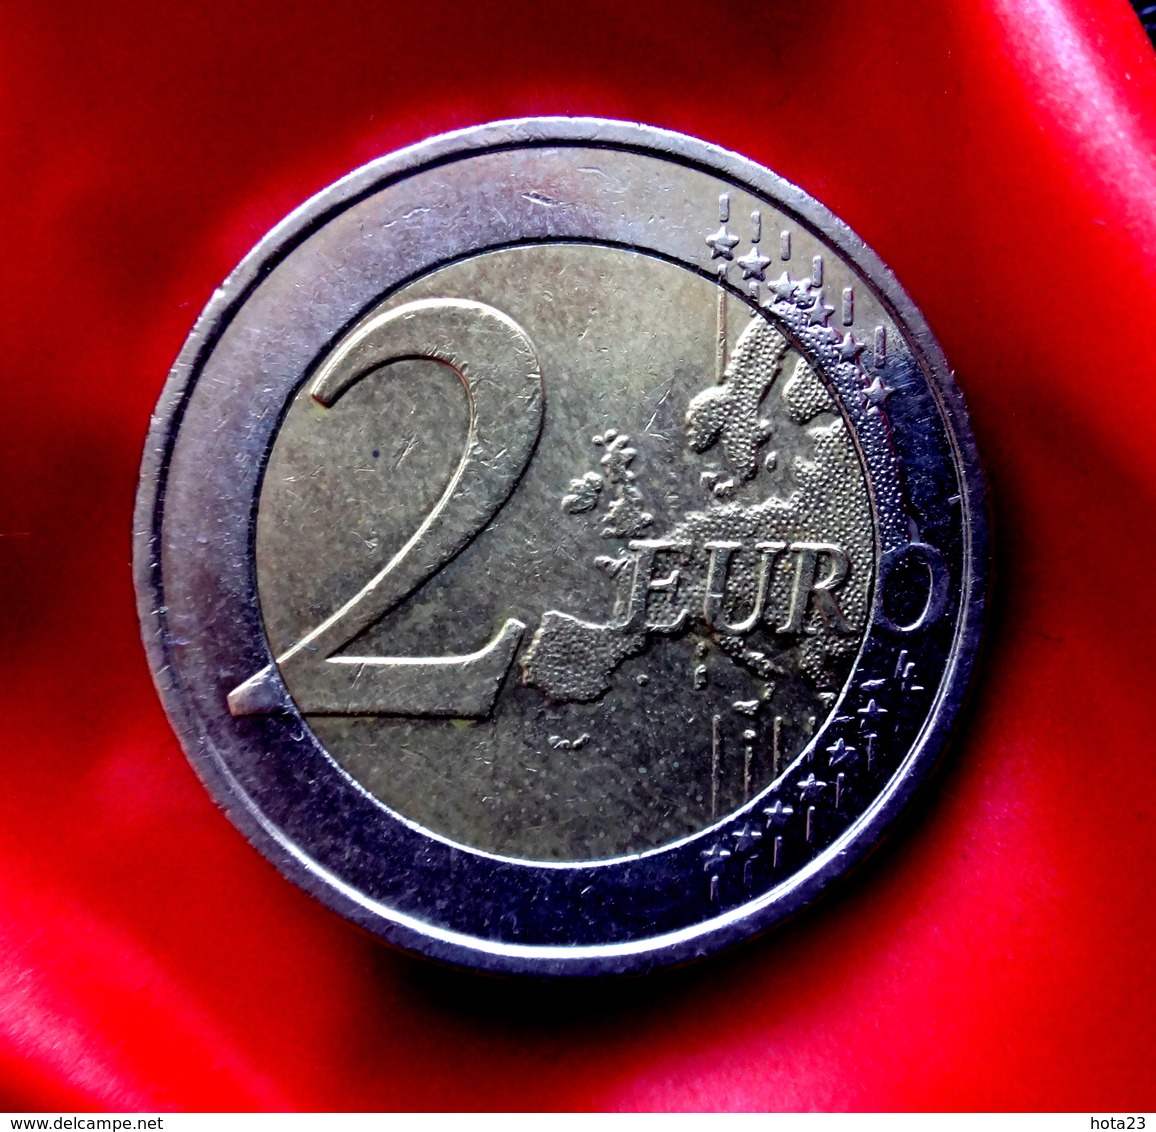 SPAIN 2 Euro  2009 EMU Coin  CIRCULATED - Espagne